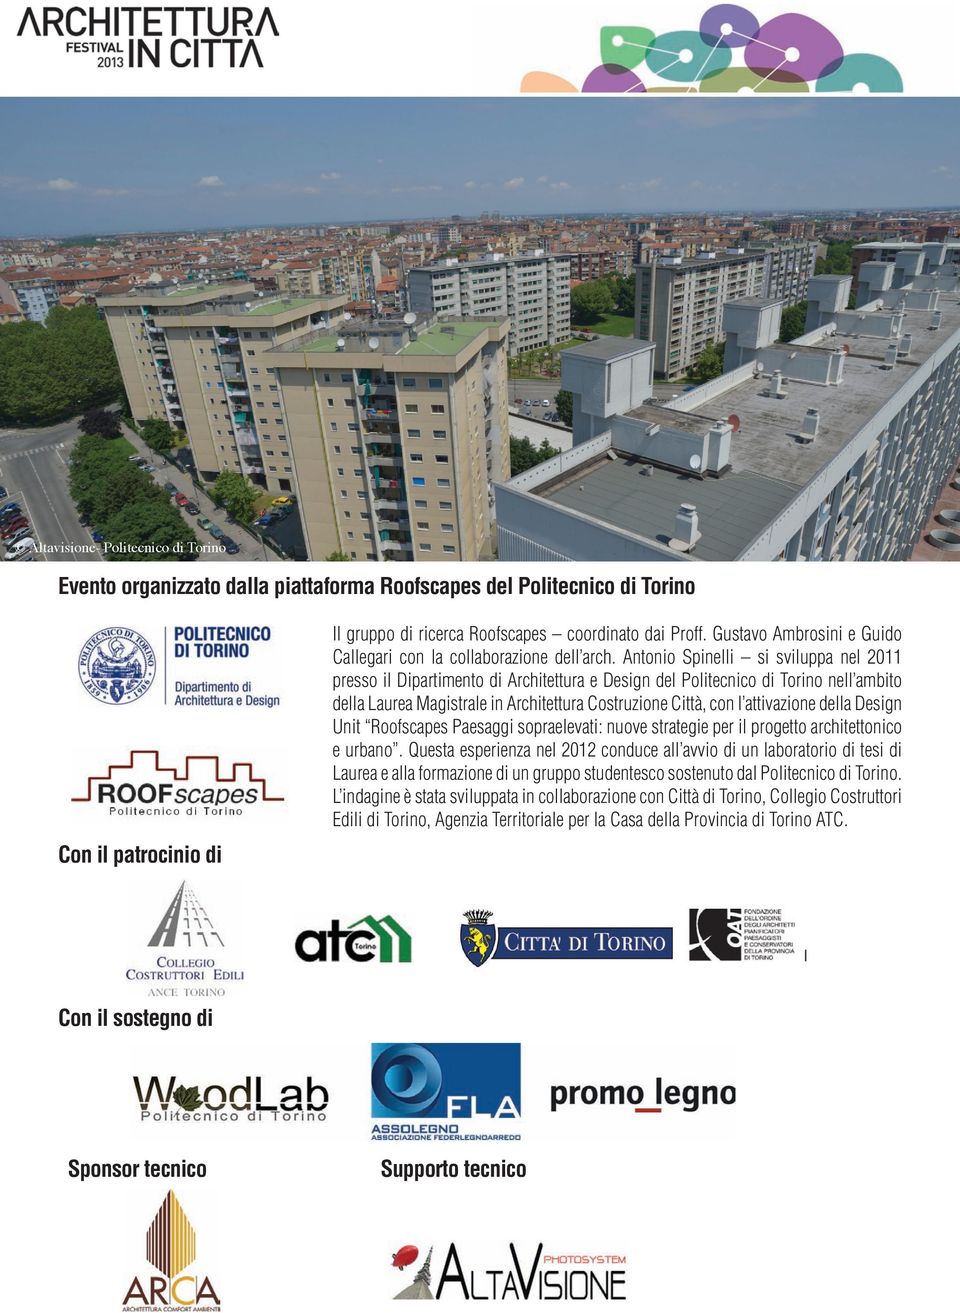 Antonio Spinelli si sviluppa nel 2011 presso il Dipartimento di Architettura e Design del Politecnico di Torino nell ambito della Laurea Magistrale in Architettura Costruzione Città, con l